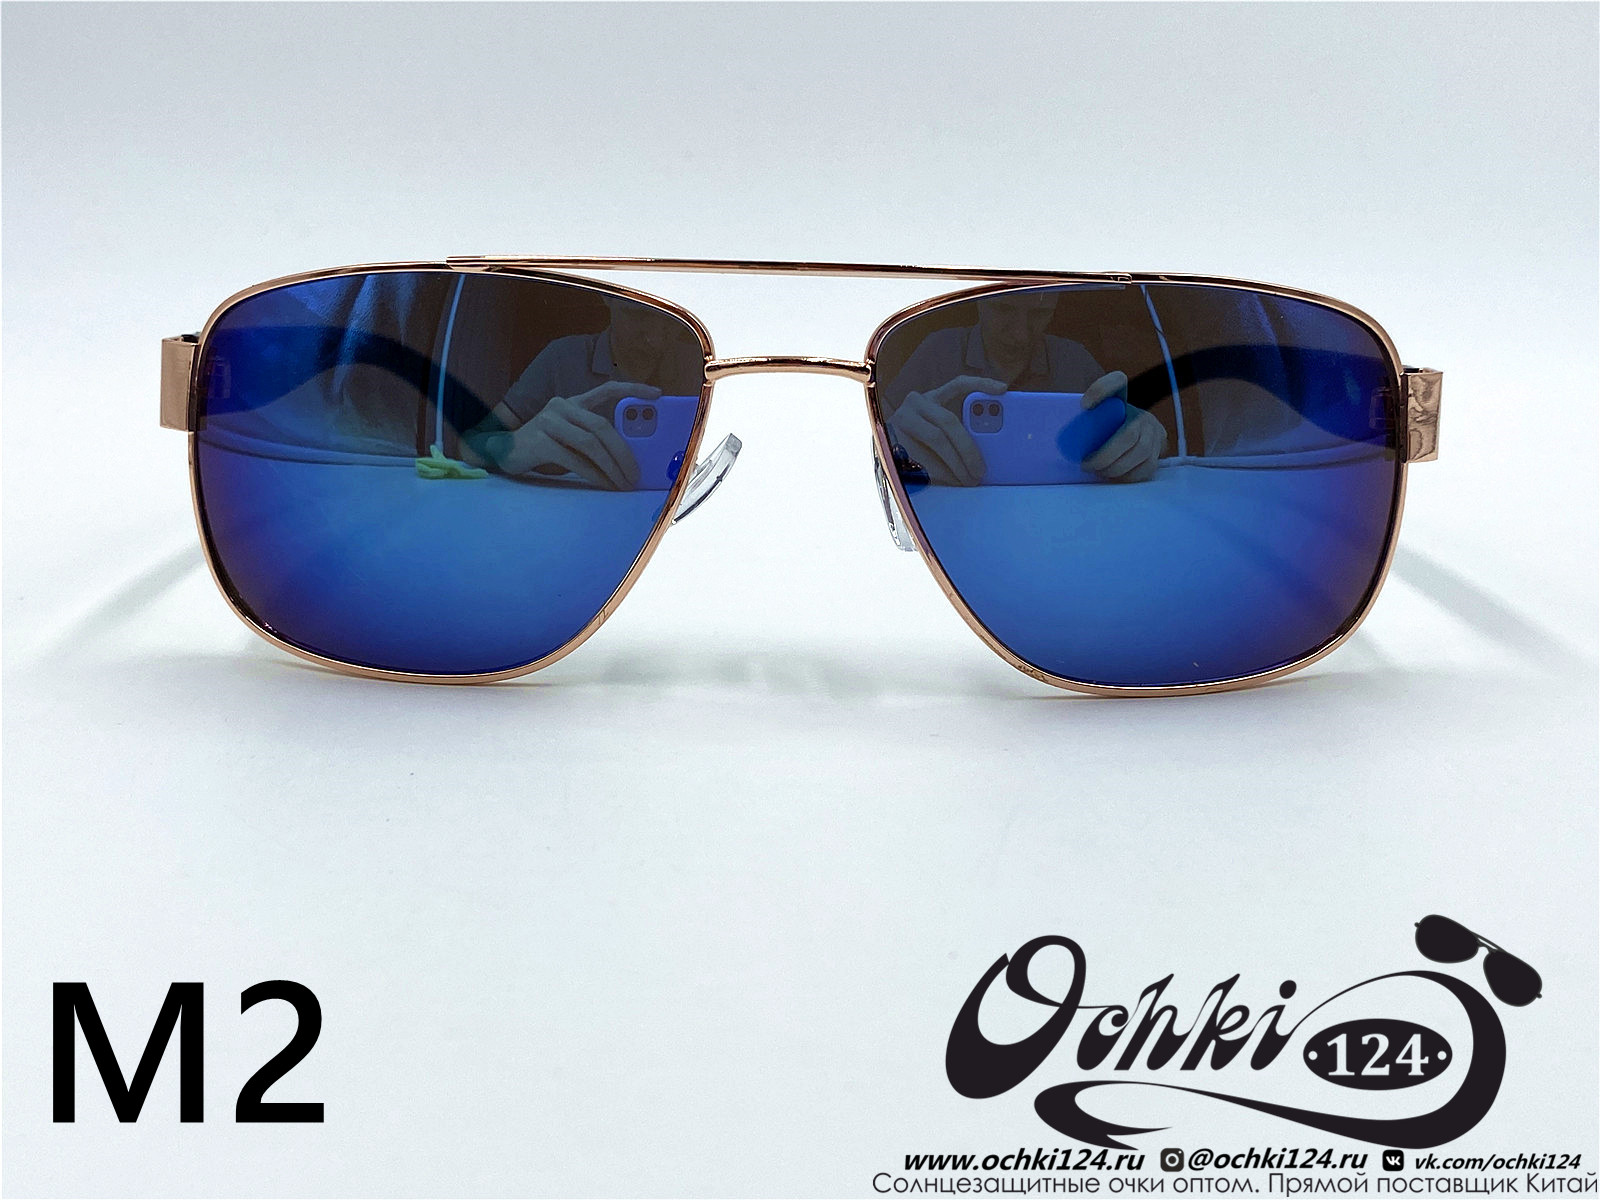  Солнцезащитные очки картинка 2022 Мужские Квадратные KaiFeng M2-7 